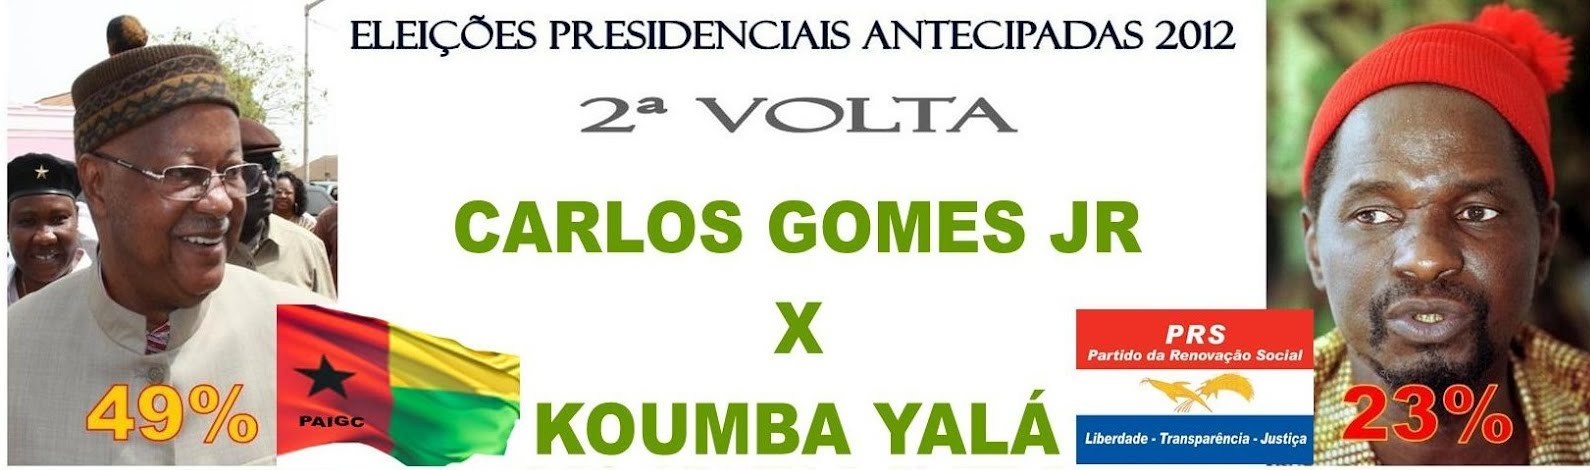 Eleições Presidenciais Antecipadas 2012. Segunda volta Carlos Gomes Jr. vs. Koumba Yalá. Montagem do blog Ditadura do Consenso